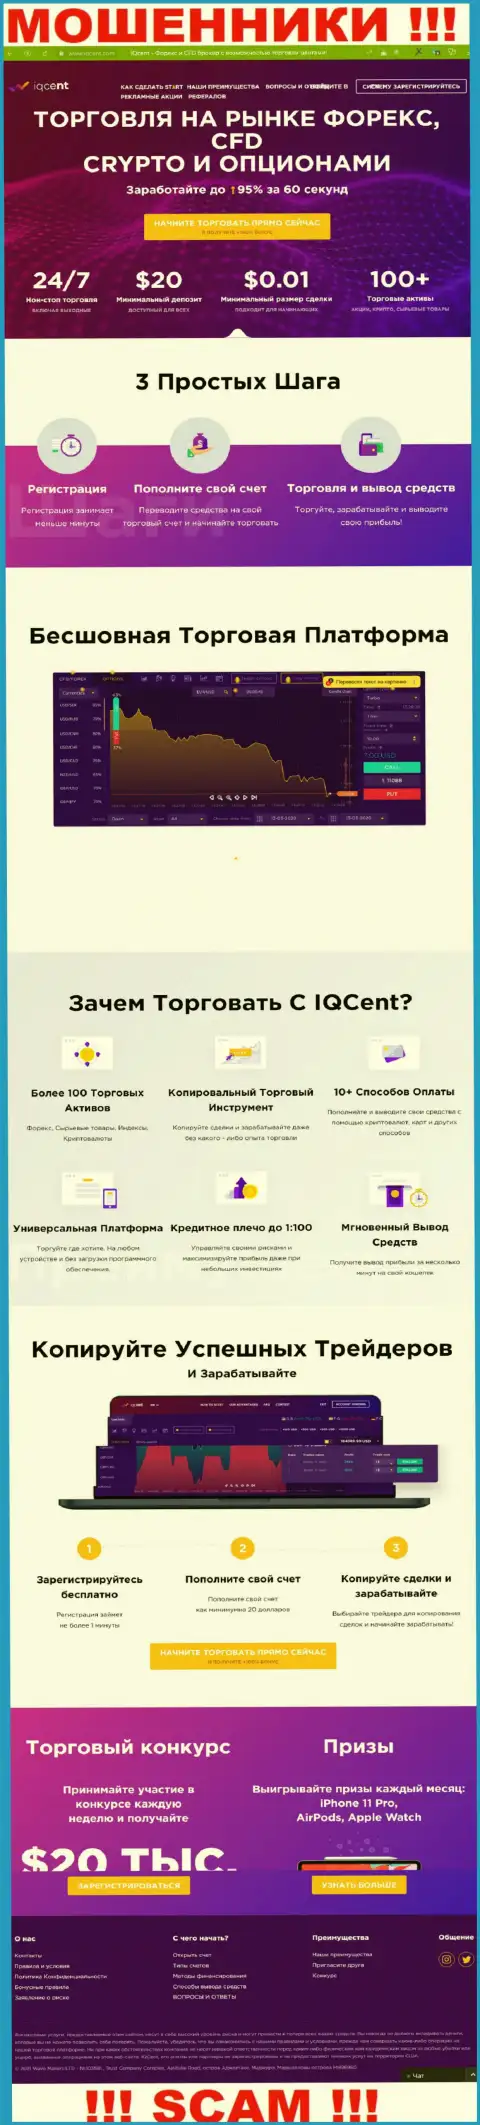 Официальный интернет-ресурс мошенников IQCent, заполненный информацией для доверчивых людей